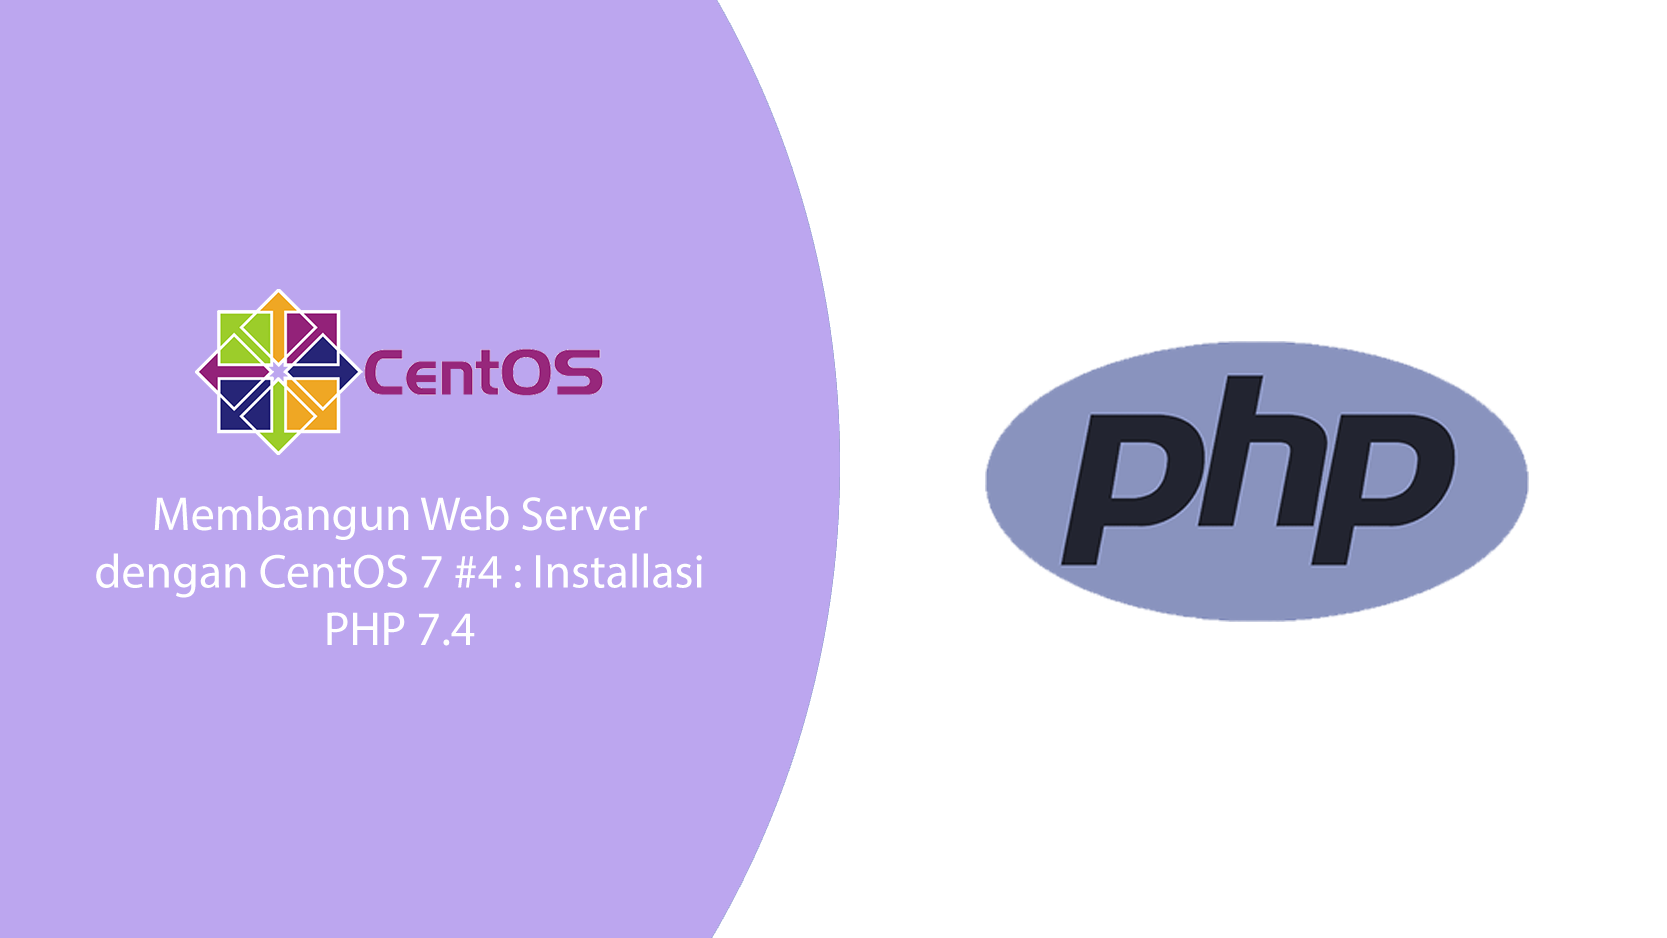 Membangun Web Server CentOS 7 #4 : Installasi PHP 7.4